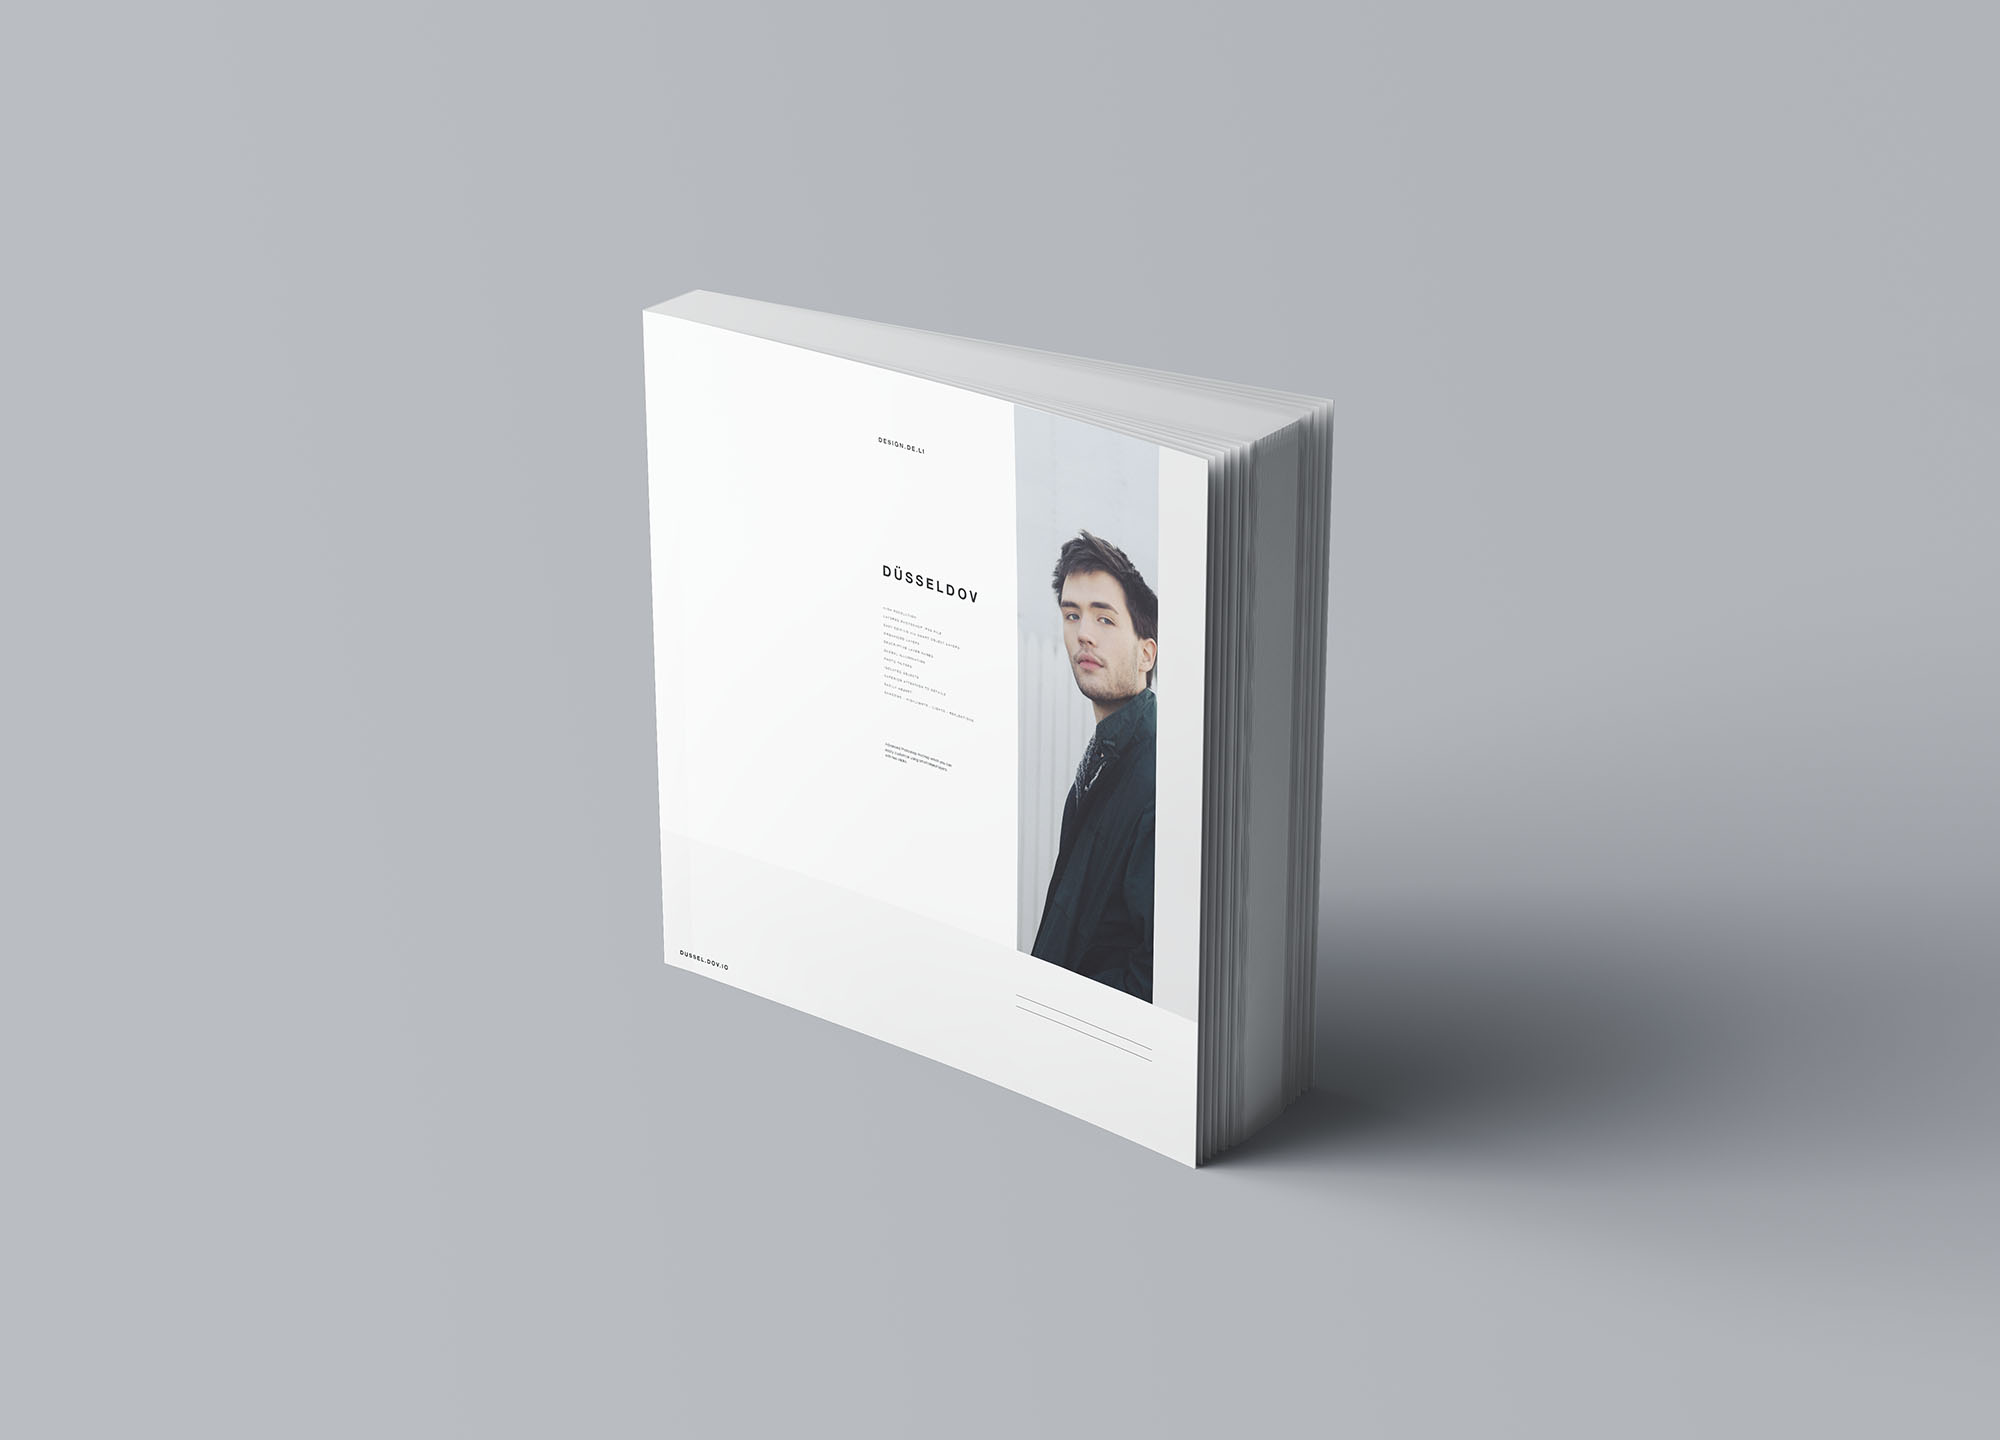 图书内页版式设计效果图样机 Square Softcover Book Mockup设计素材模板